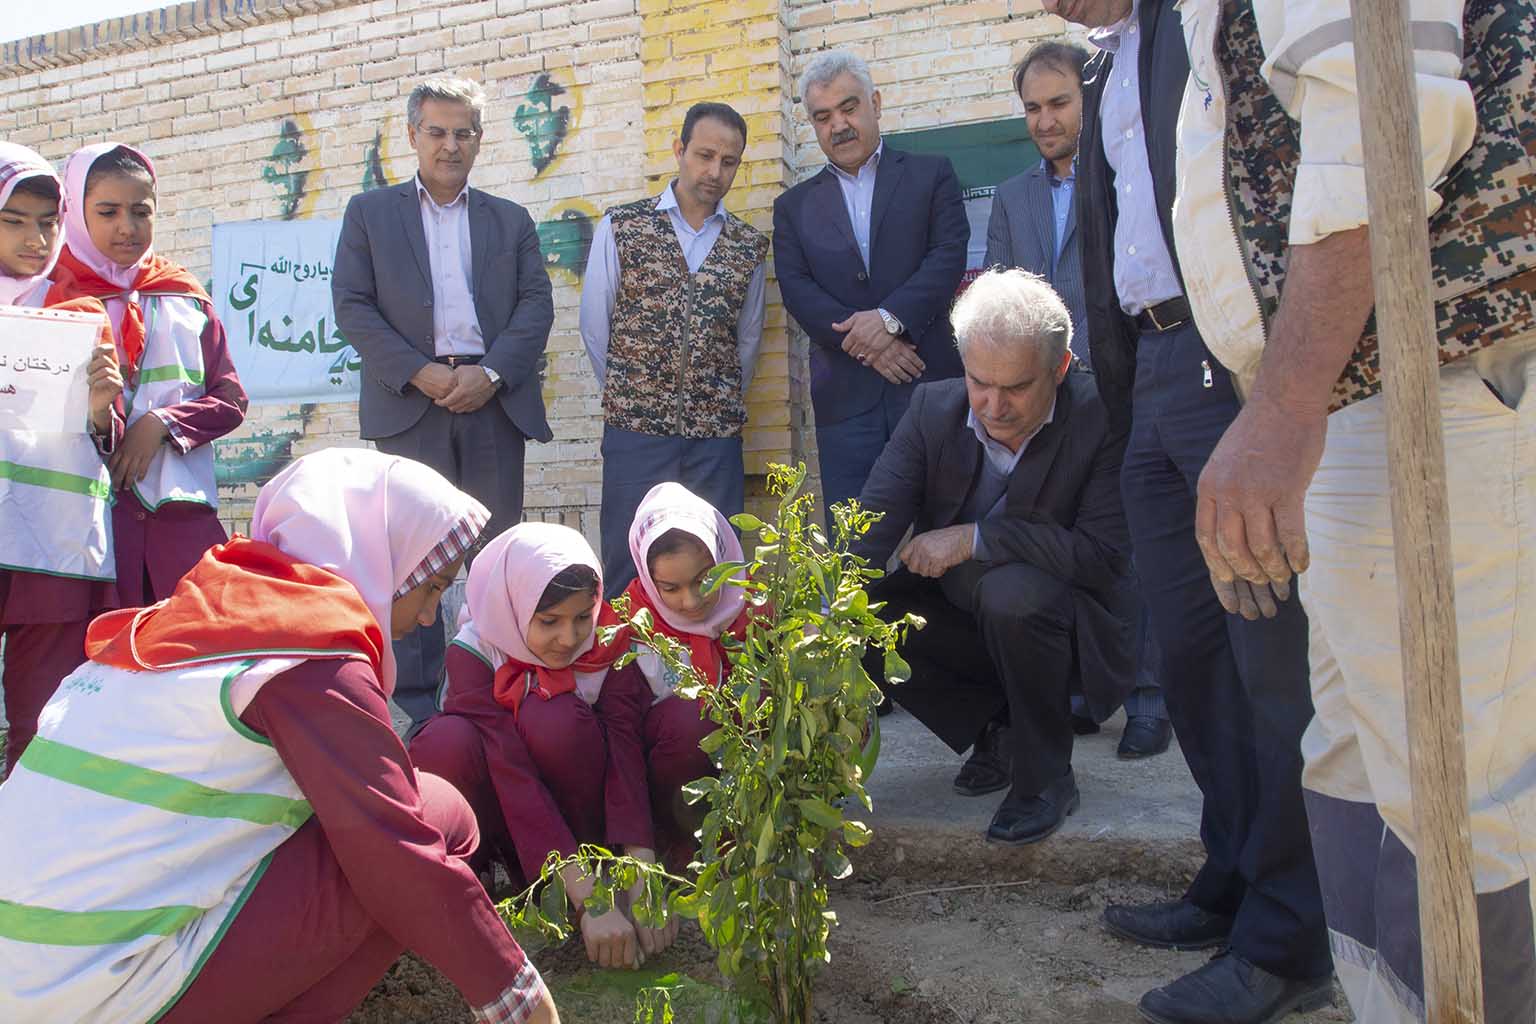 گزارش یک رویداد مسئولانه از پتروشیمی فجر/نهال کاری به مناسبت هفته درختکاری و روز شهید